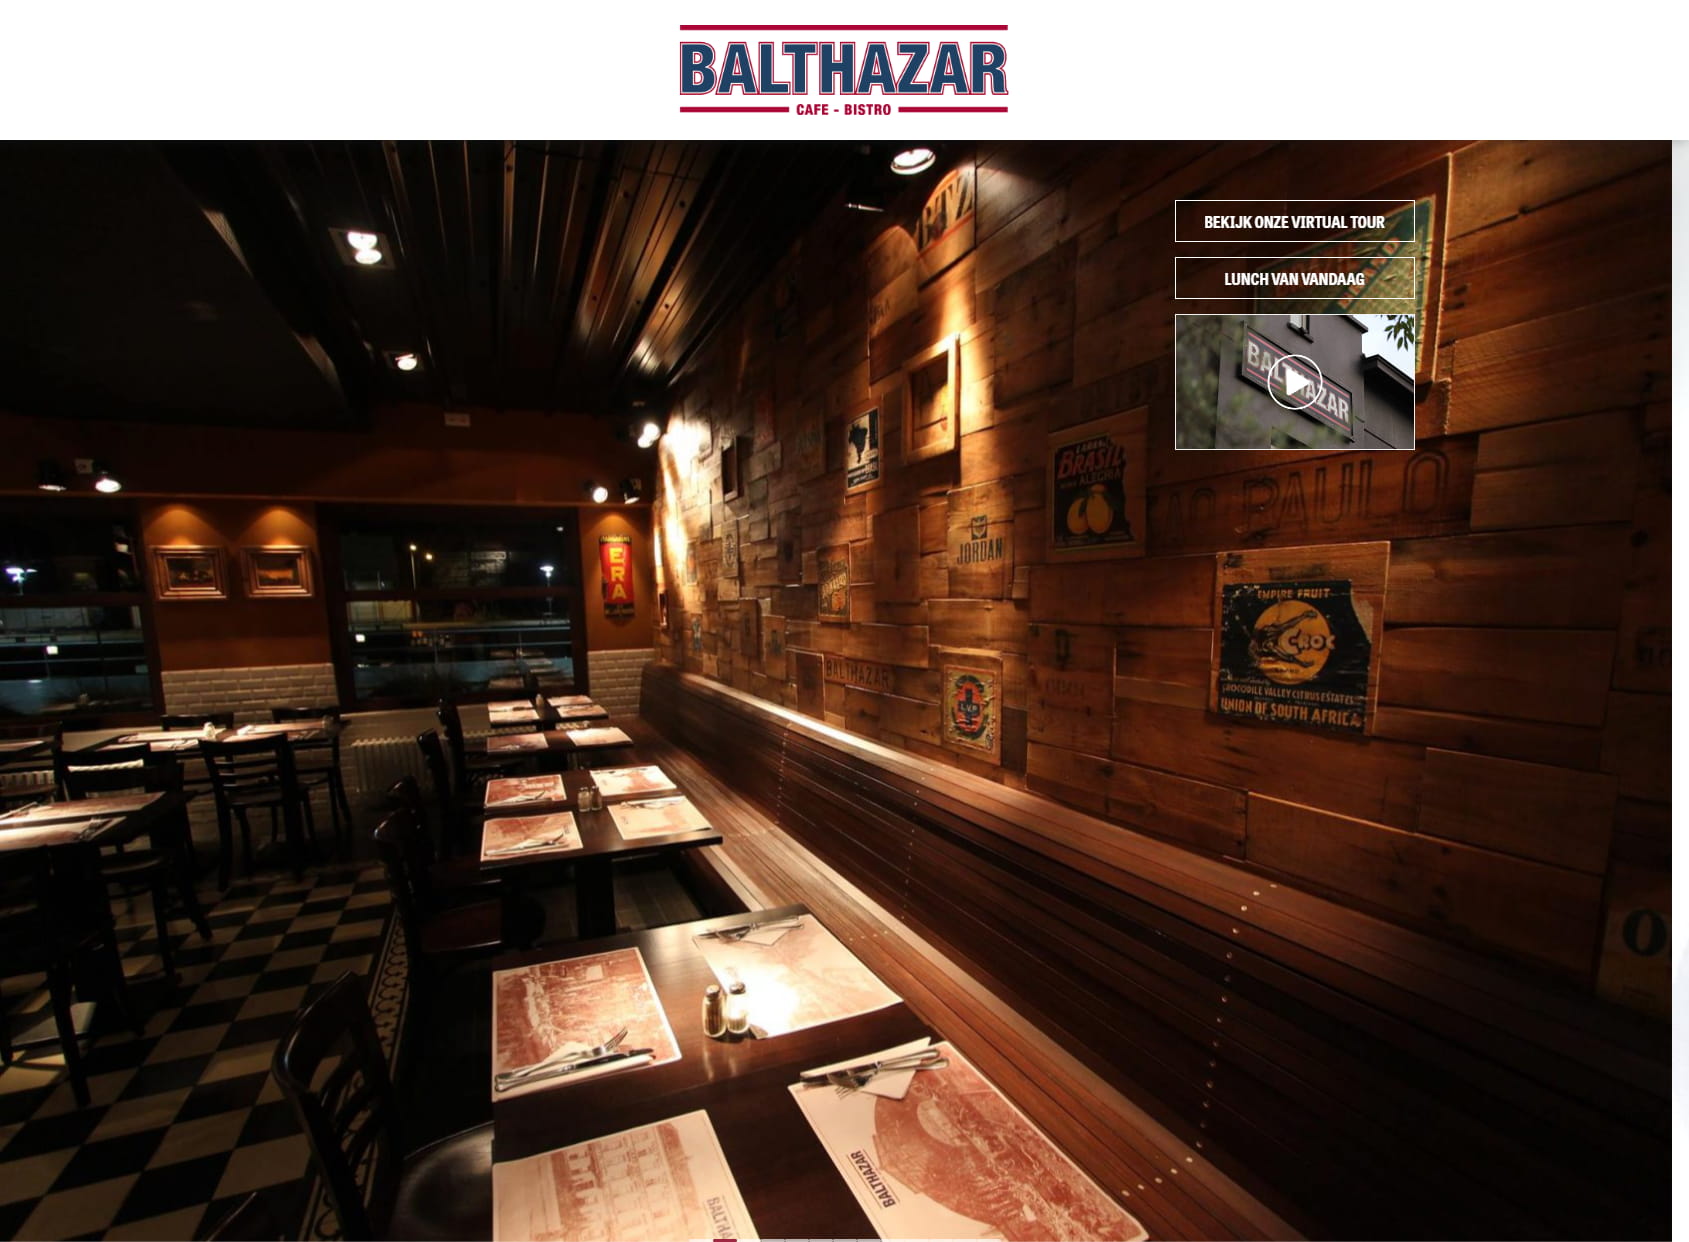 Balthazar café-bistro